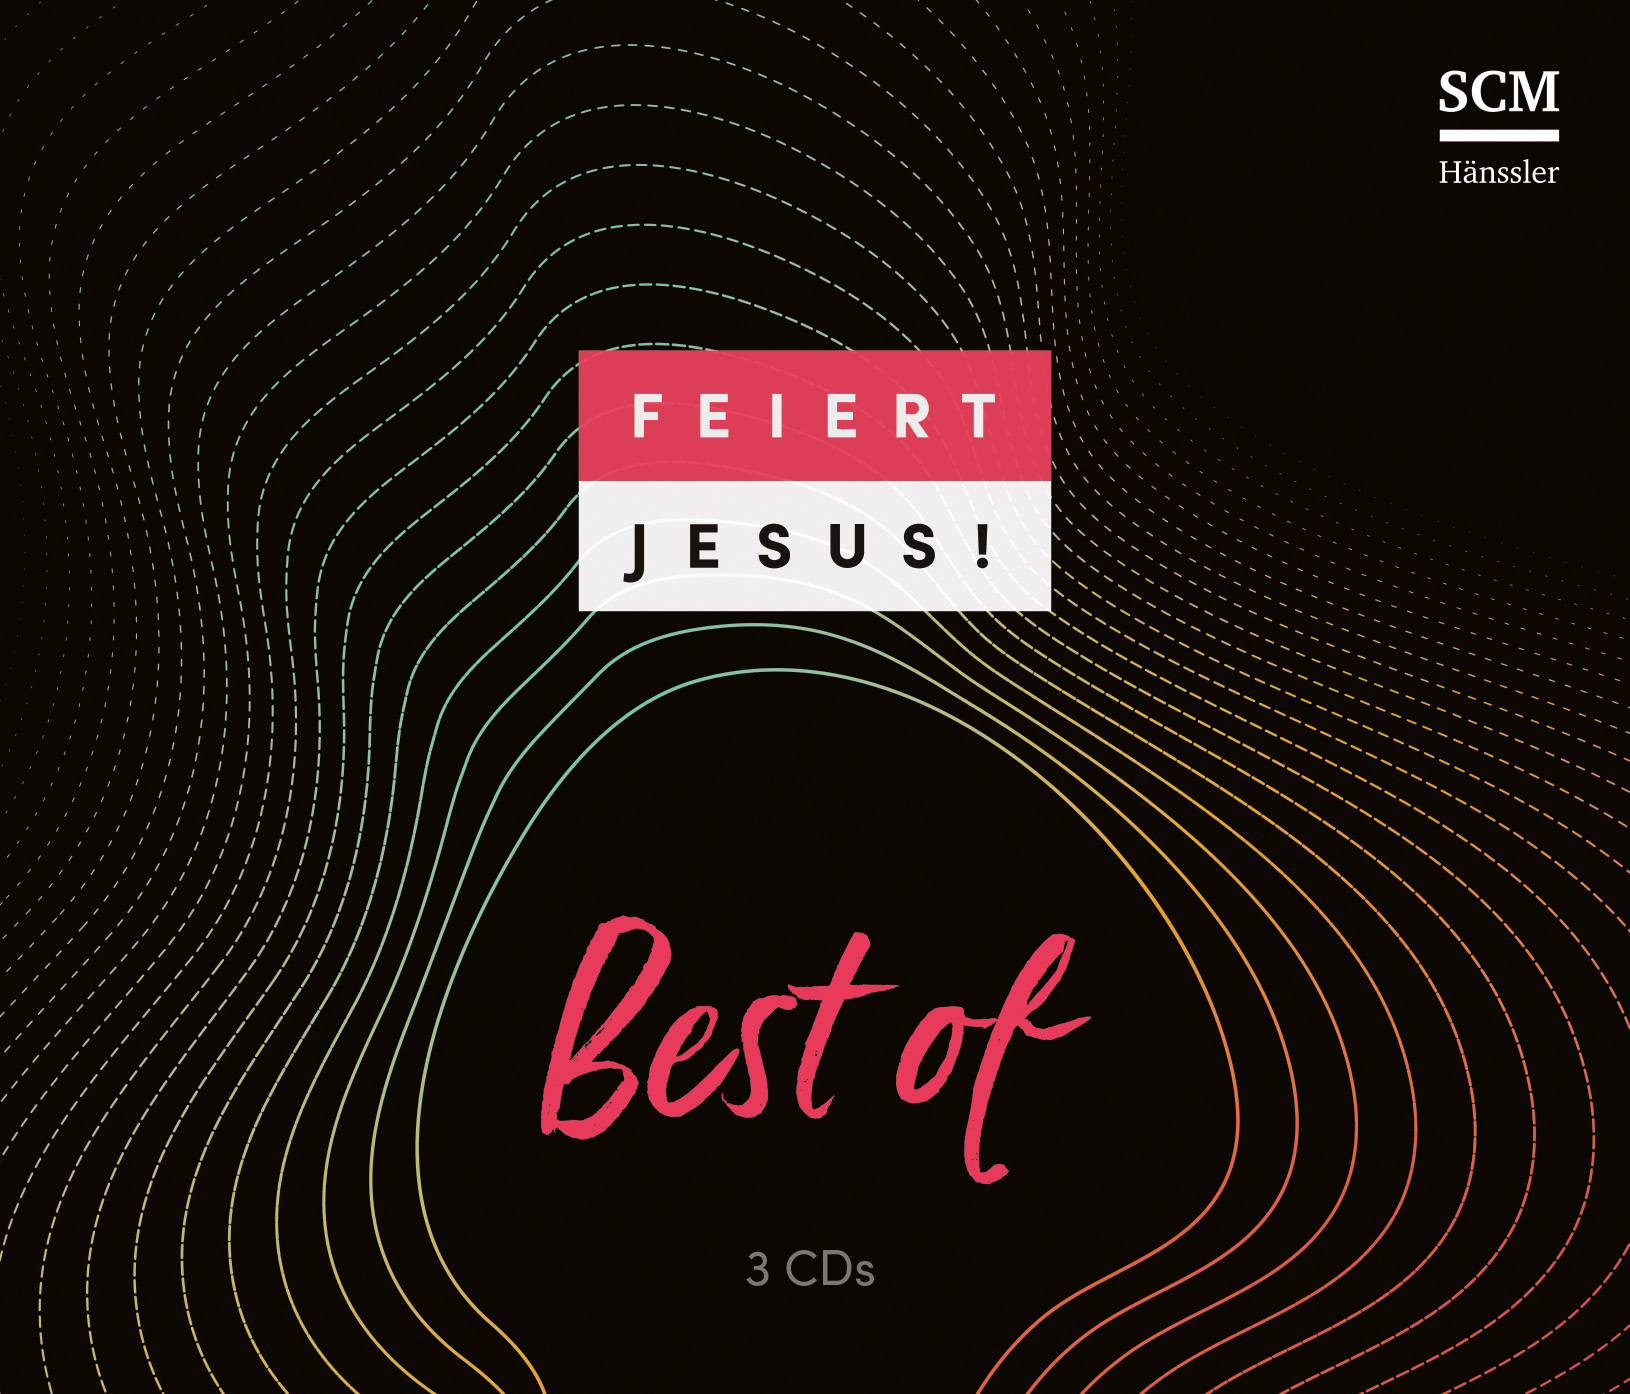 Feiert Jesus! Best of CD - Cover